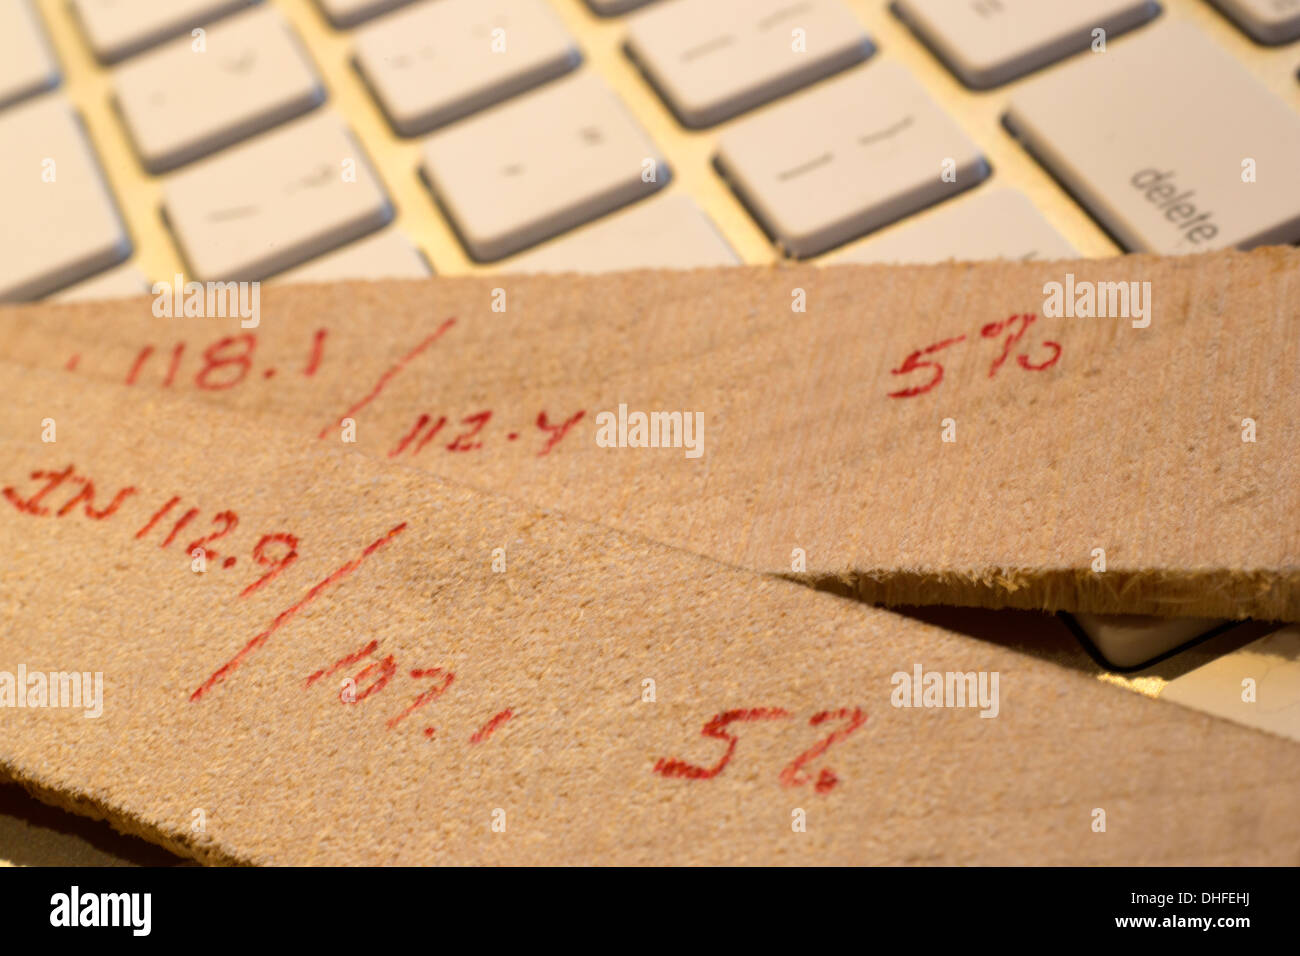 Los cálculos de reducción de Humedad Humedad de madera de madera horno rebanadas poniendo en teclado de ordenador Foto de stock